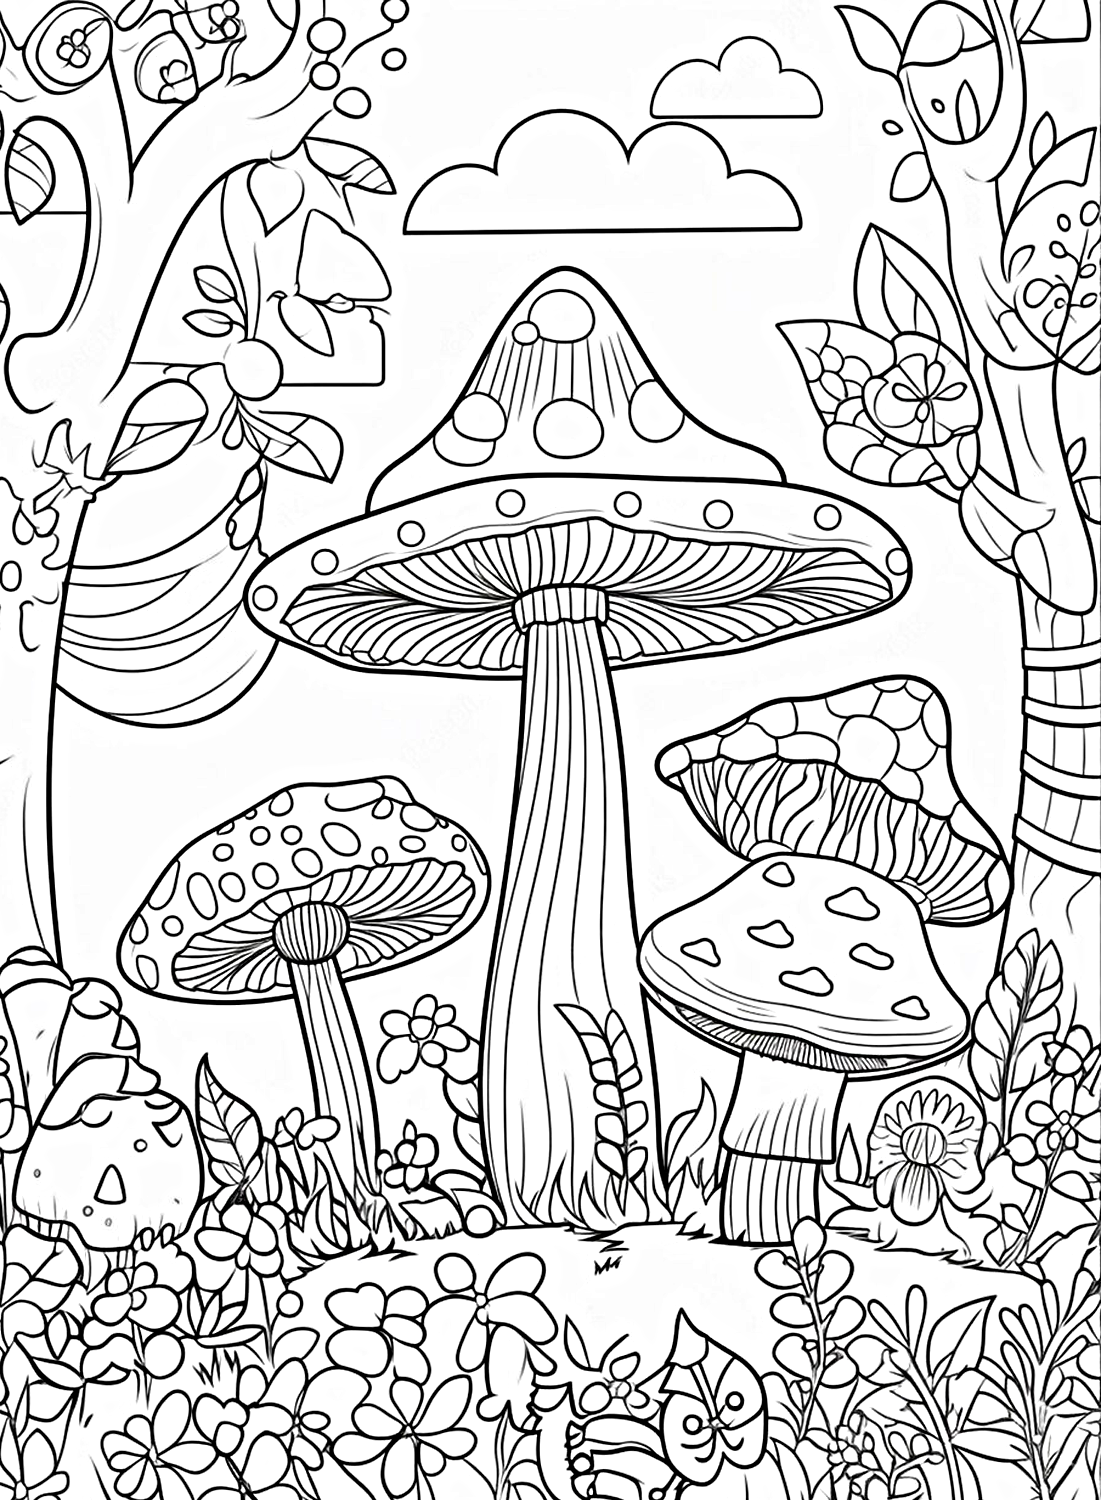 Раскраска «Множество высоких грибов» из мультфильма «Гриб»